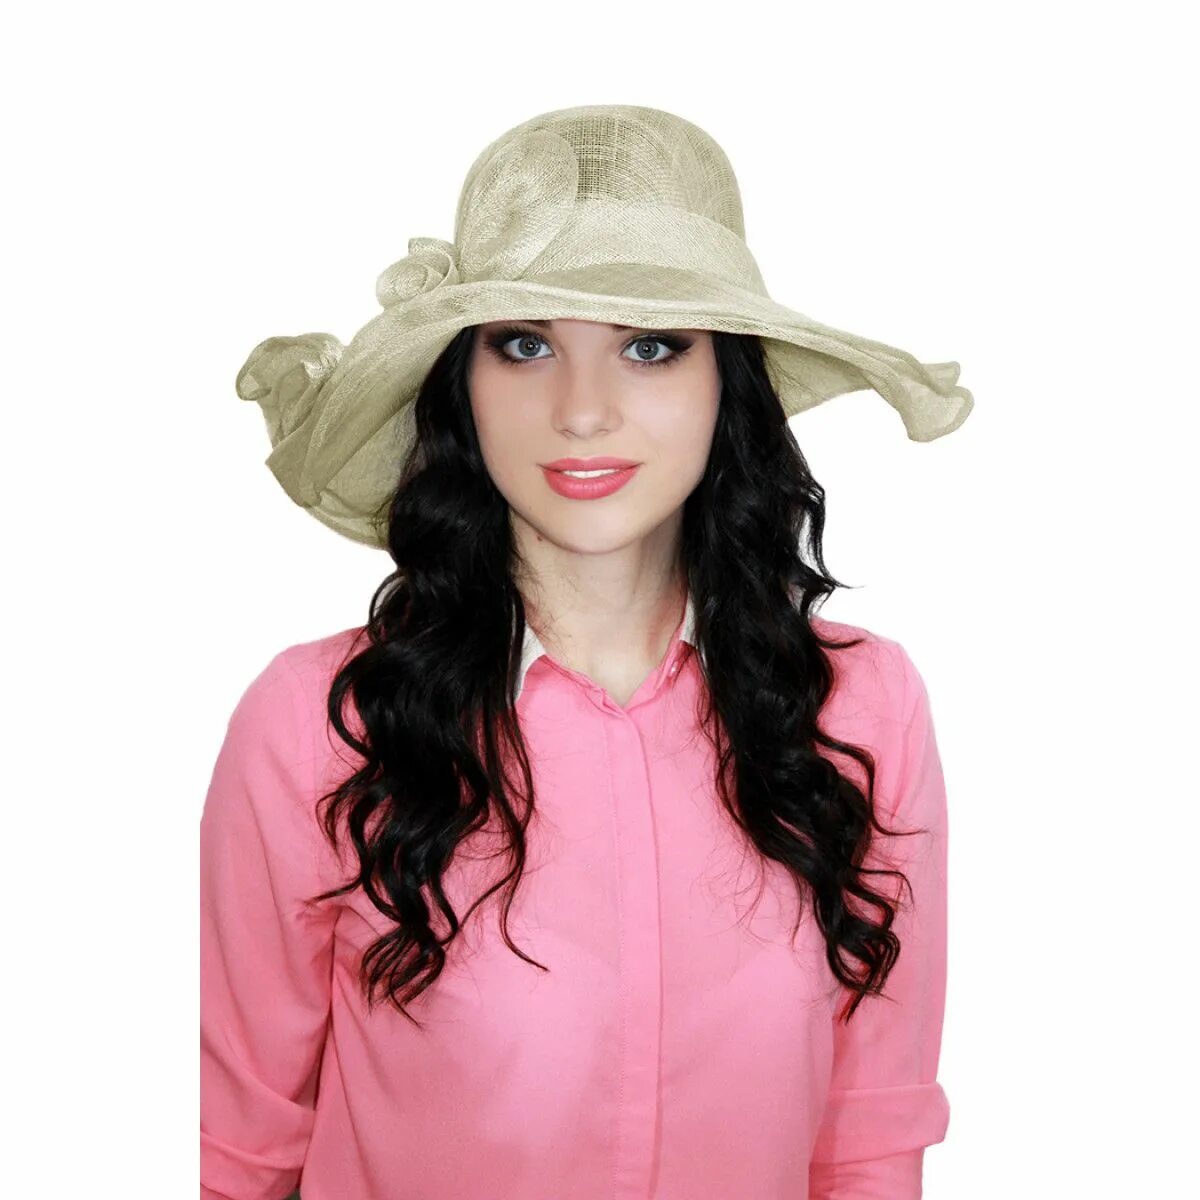 Купить шляпу в интернет магазине. Шляпки Бондарева синамей. Леммекс шляпы и шляпки. Лемех шляпки женские. Шляпы женские из синамей с маленькими полями.